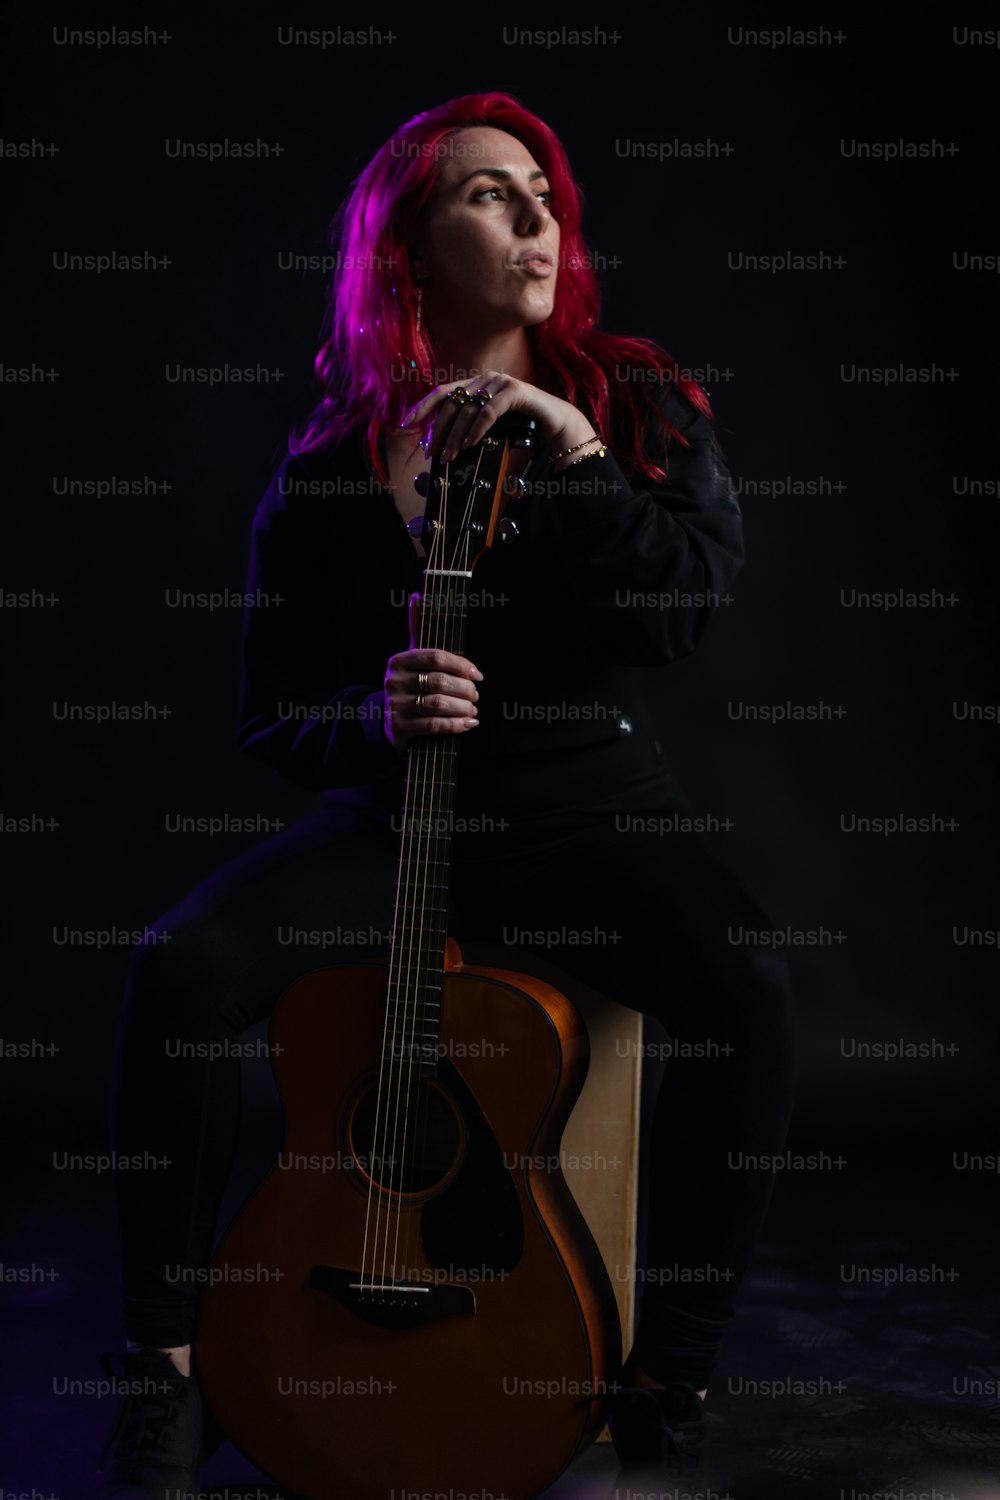 Eine Frau mit roten Haaren sitzt auf einem Stuhl und hält eine Gitarre in der Hand